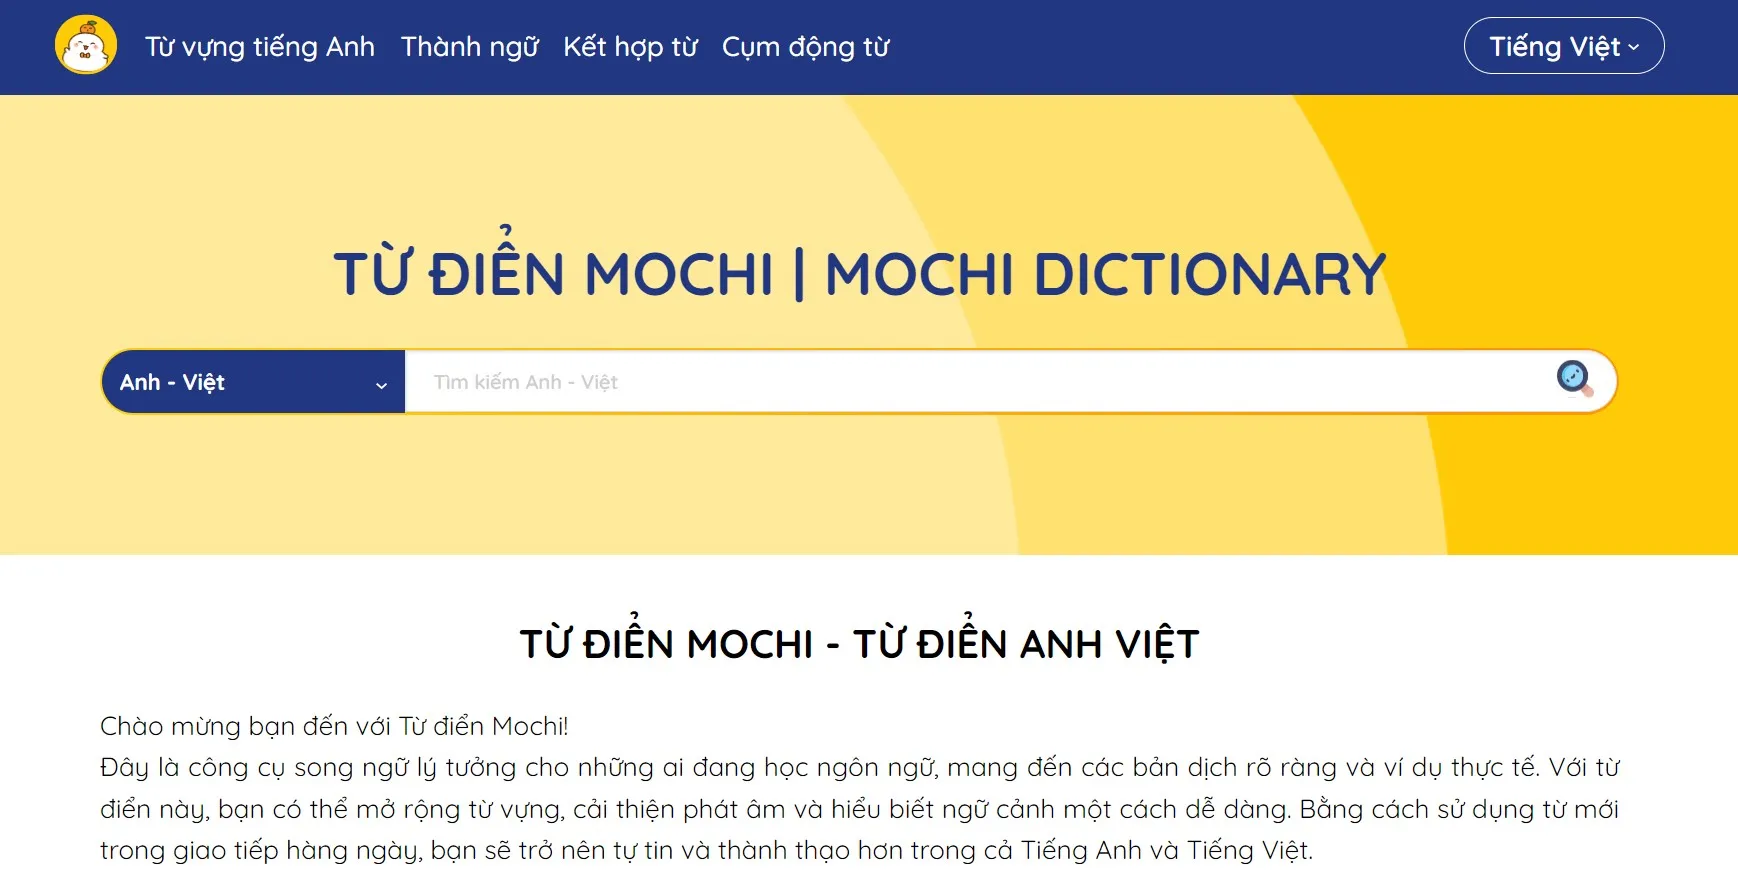 Từ điển Mochi là gì? Hướng dẫn cách sử dụng từ điển Mochi